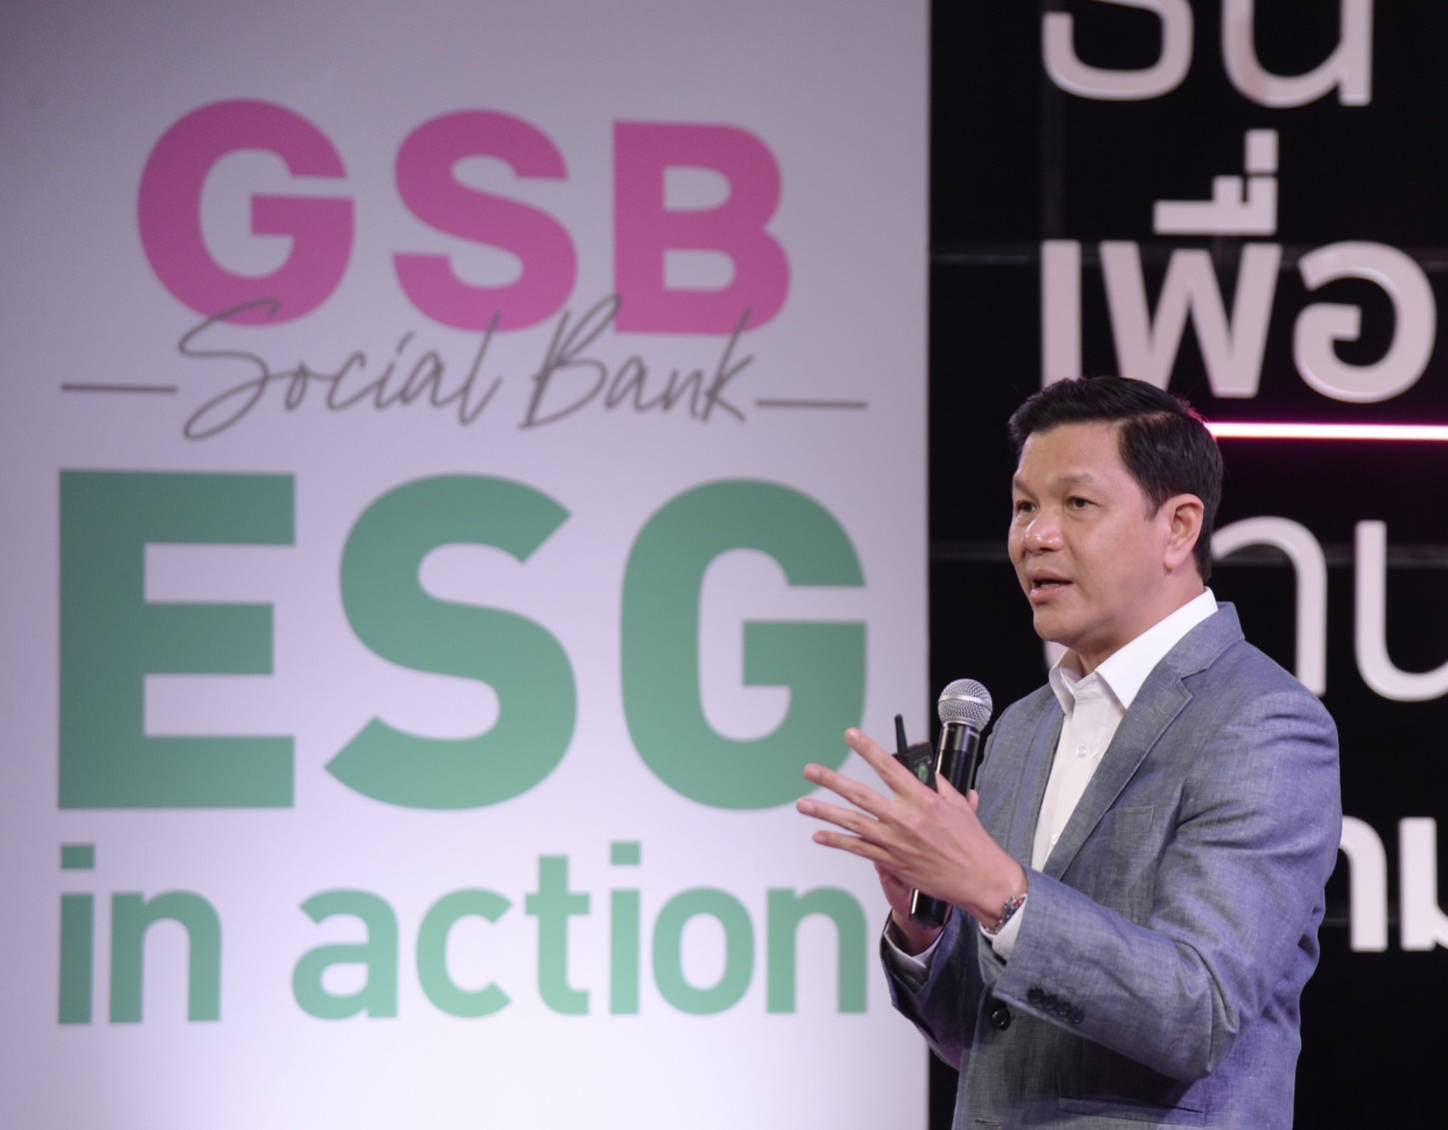 ออมสิน ชู ESG in action เดินหน้าธนาคารเพื่อสังคม เปิดผลงานเด่นด้านสิ่งแวดล้อม สังคม ธรรมาภิบาล สร้างอิมแพคเป็นเม็ดเงินกว่า 55,400 ล้านบาท